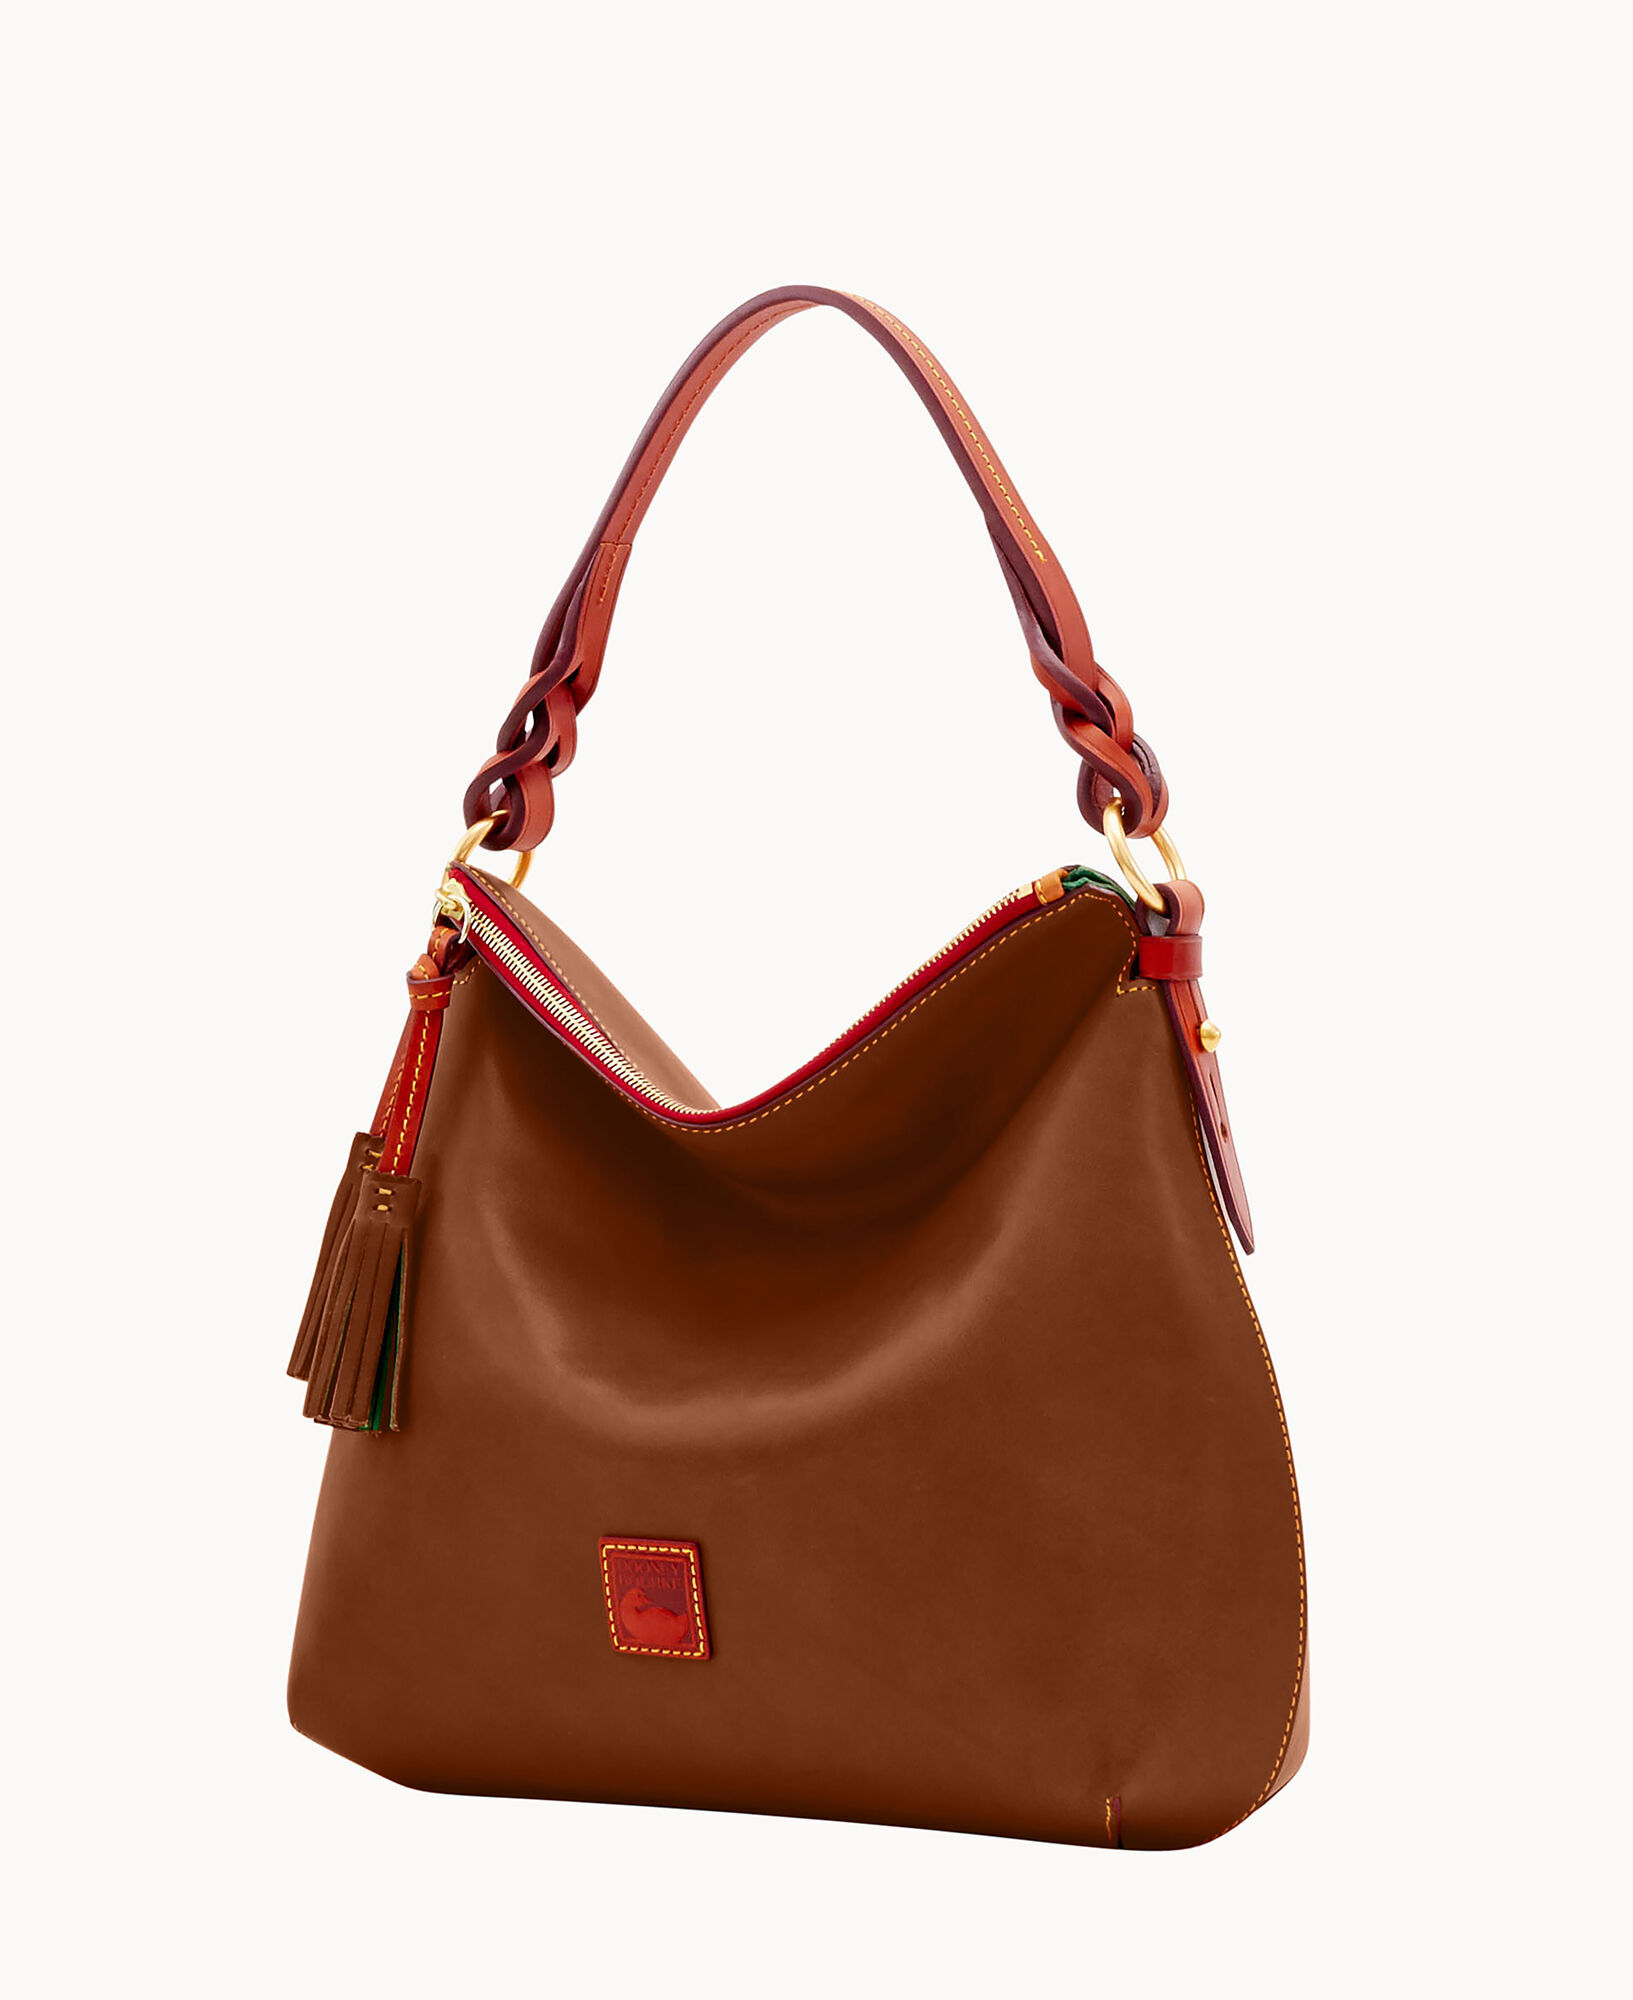 Buy LEATHER HOBO Bag BROWN Oversize Shoulder Bag Everyday Online